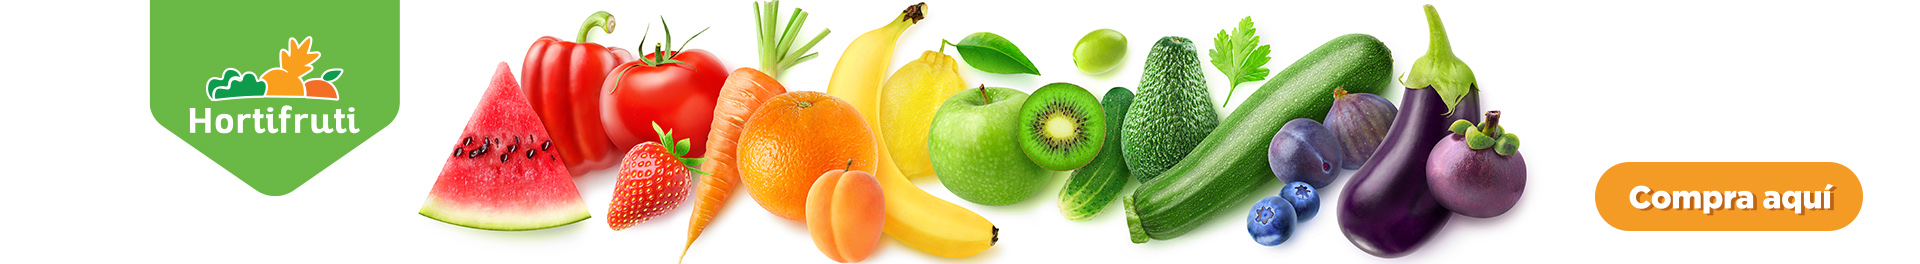 Frutas Hortifruti